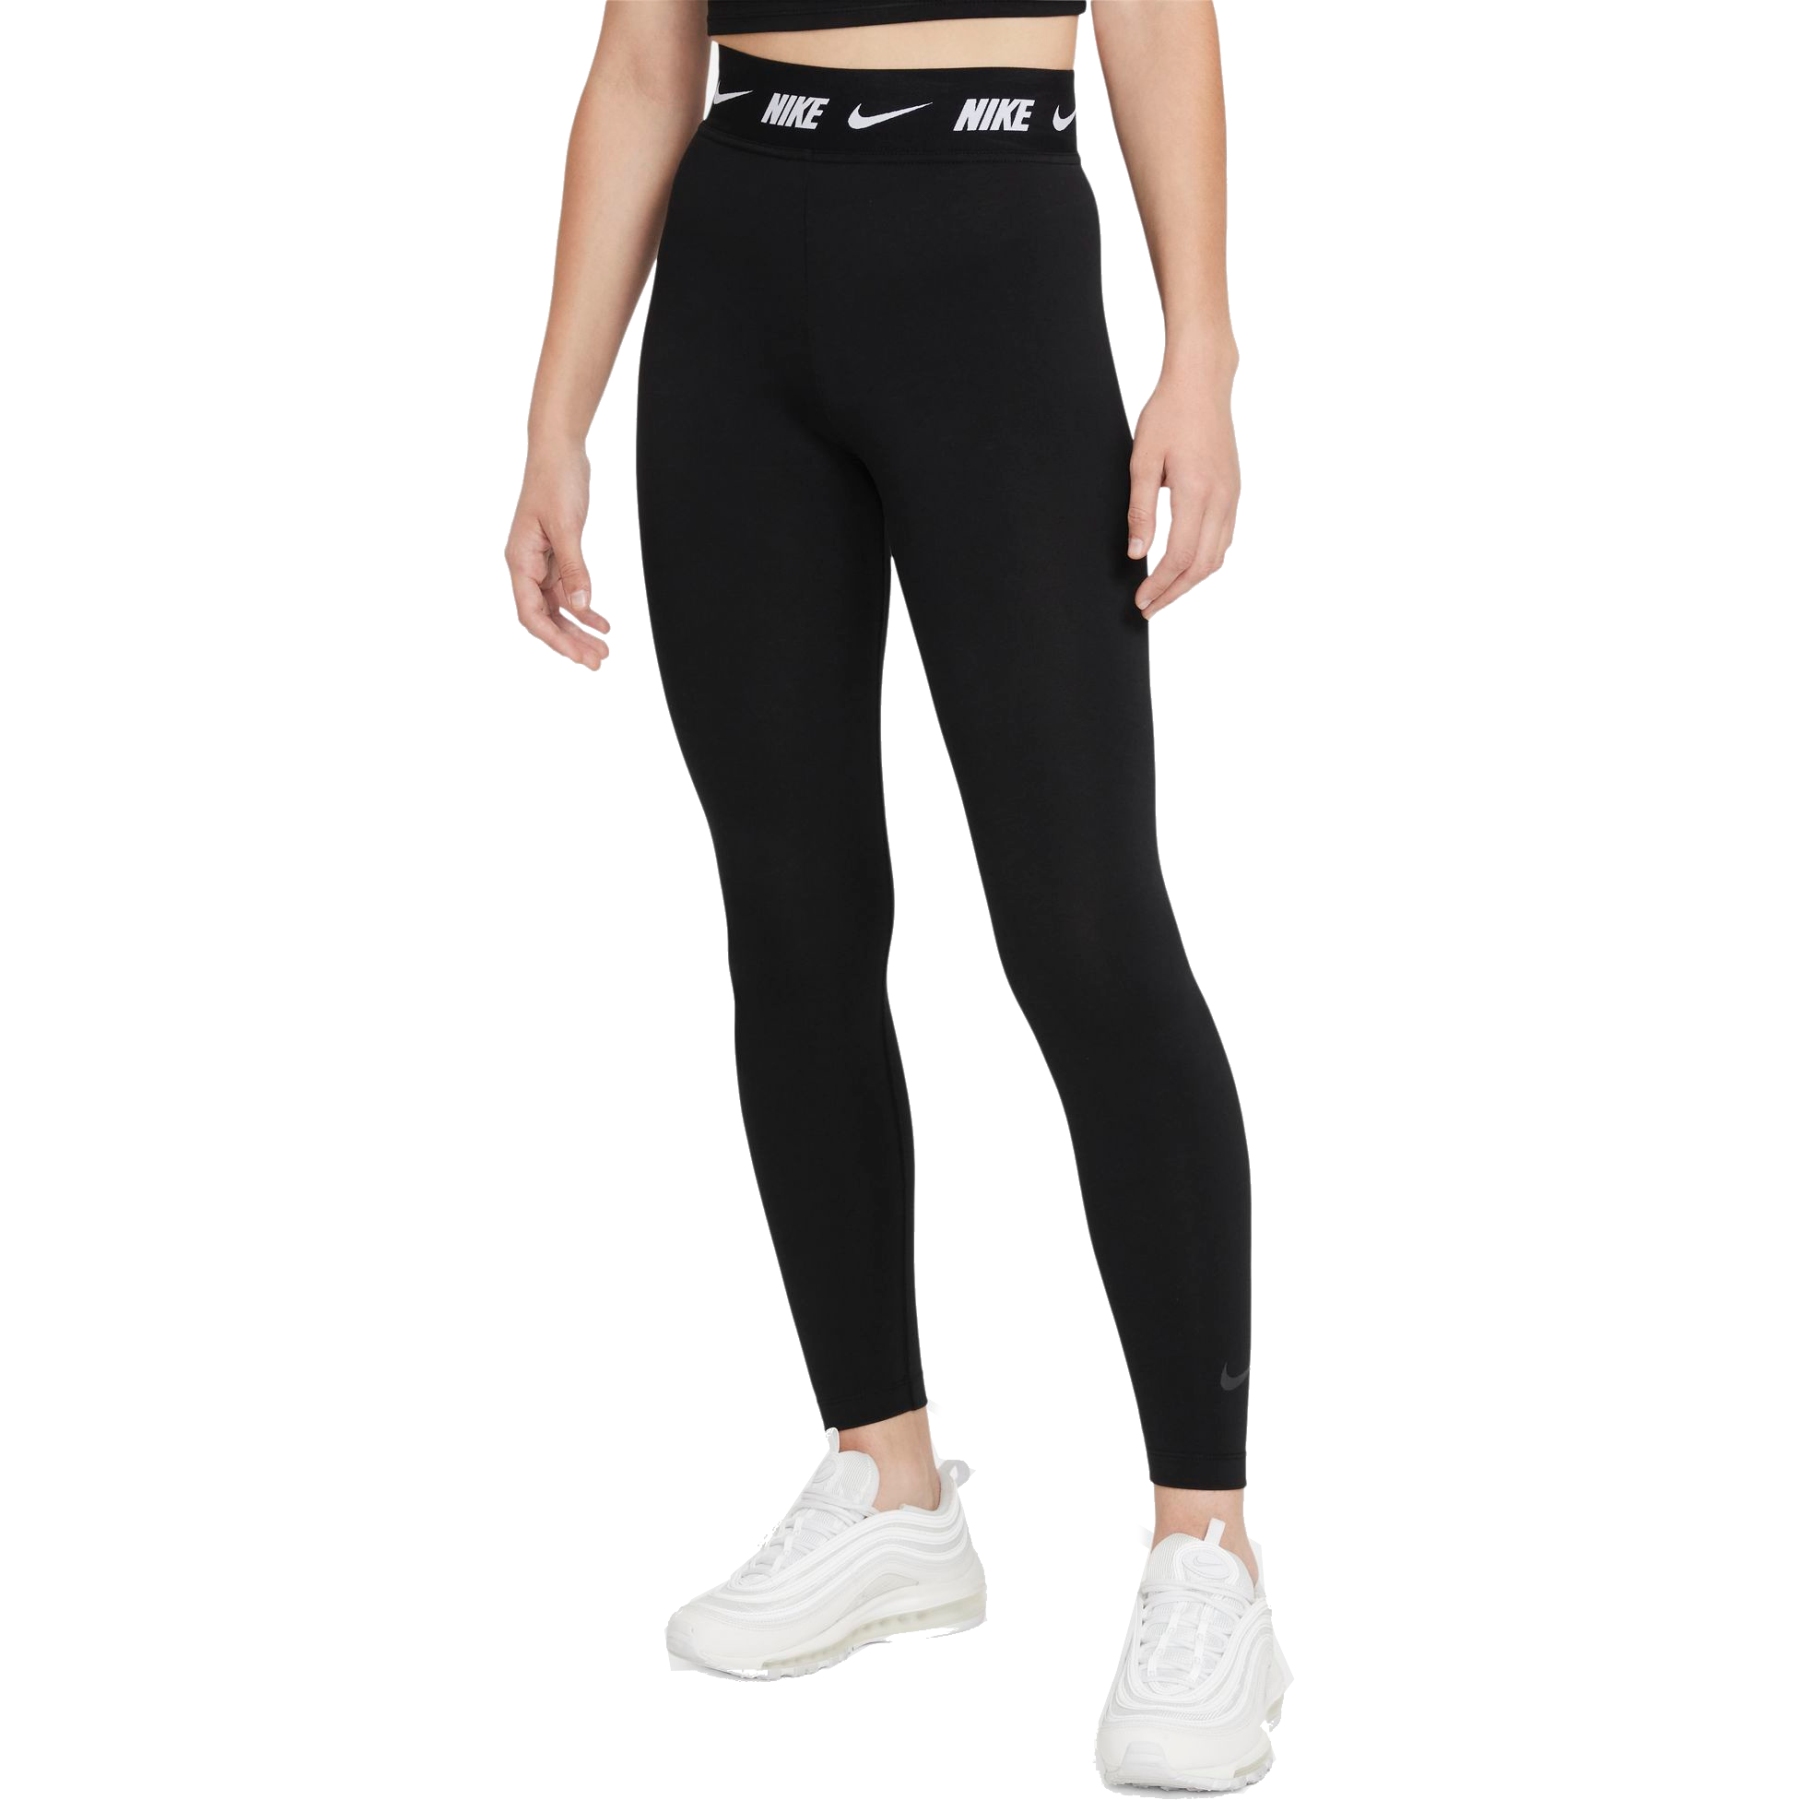 Produktbild von Nike Sportswear Club Leggings mit hohem Bund Damen - black/dark smoke grey DM4651-010